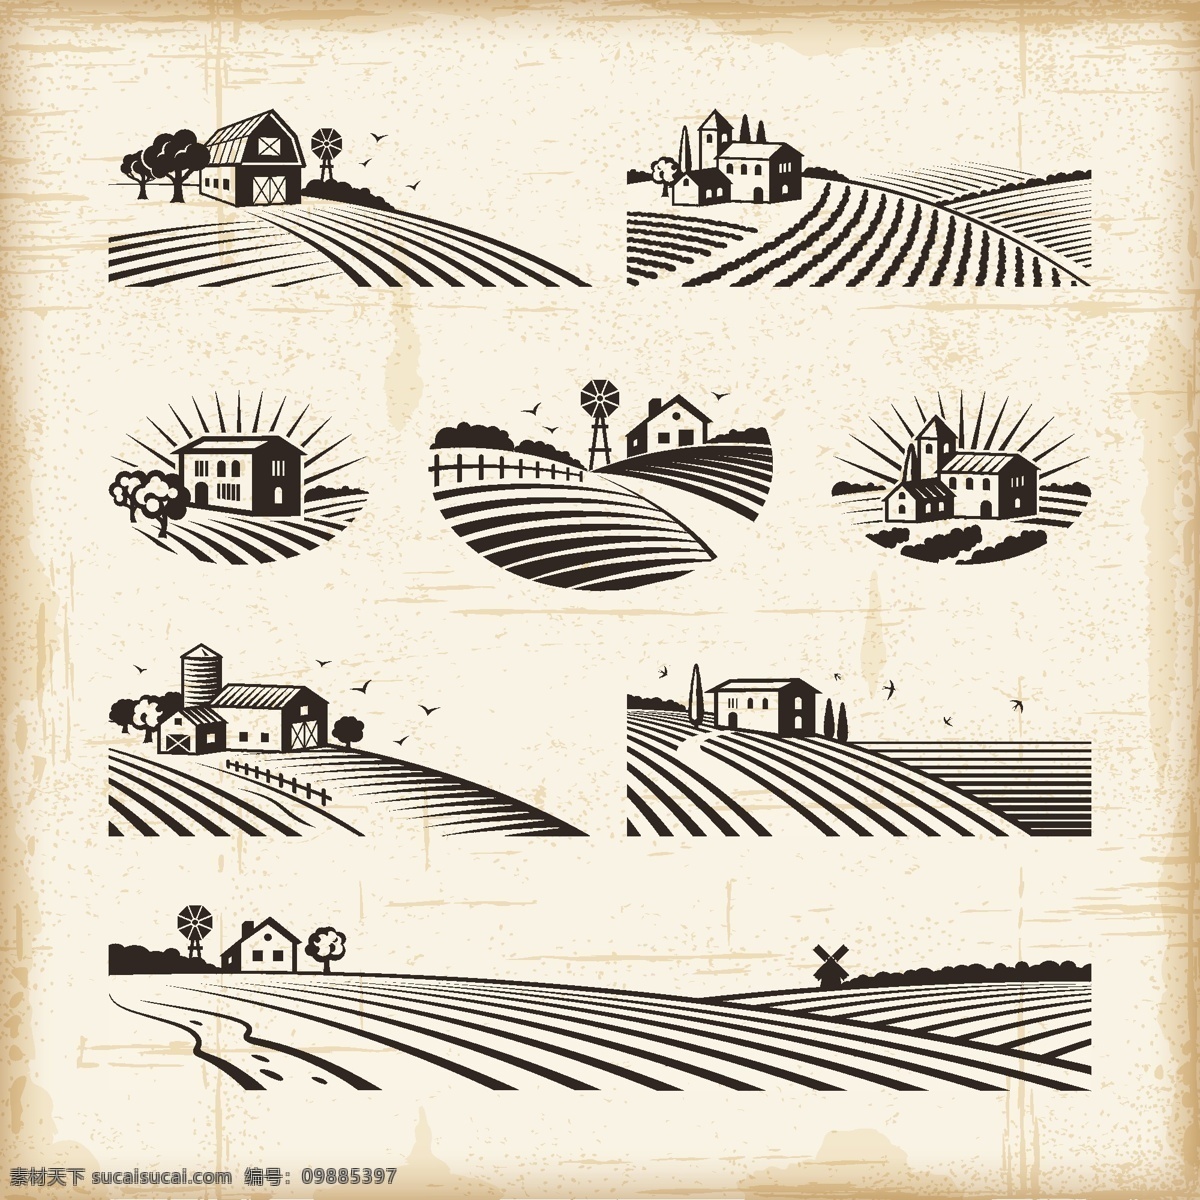 农场 标签 图形 素材图片 农田 矢量 矢量图 其他矢量图